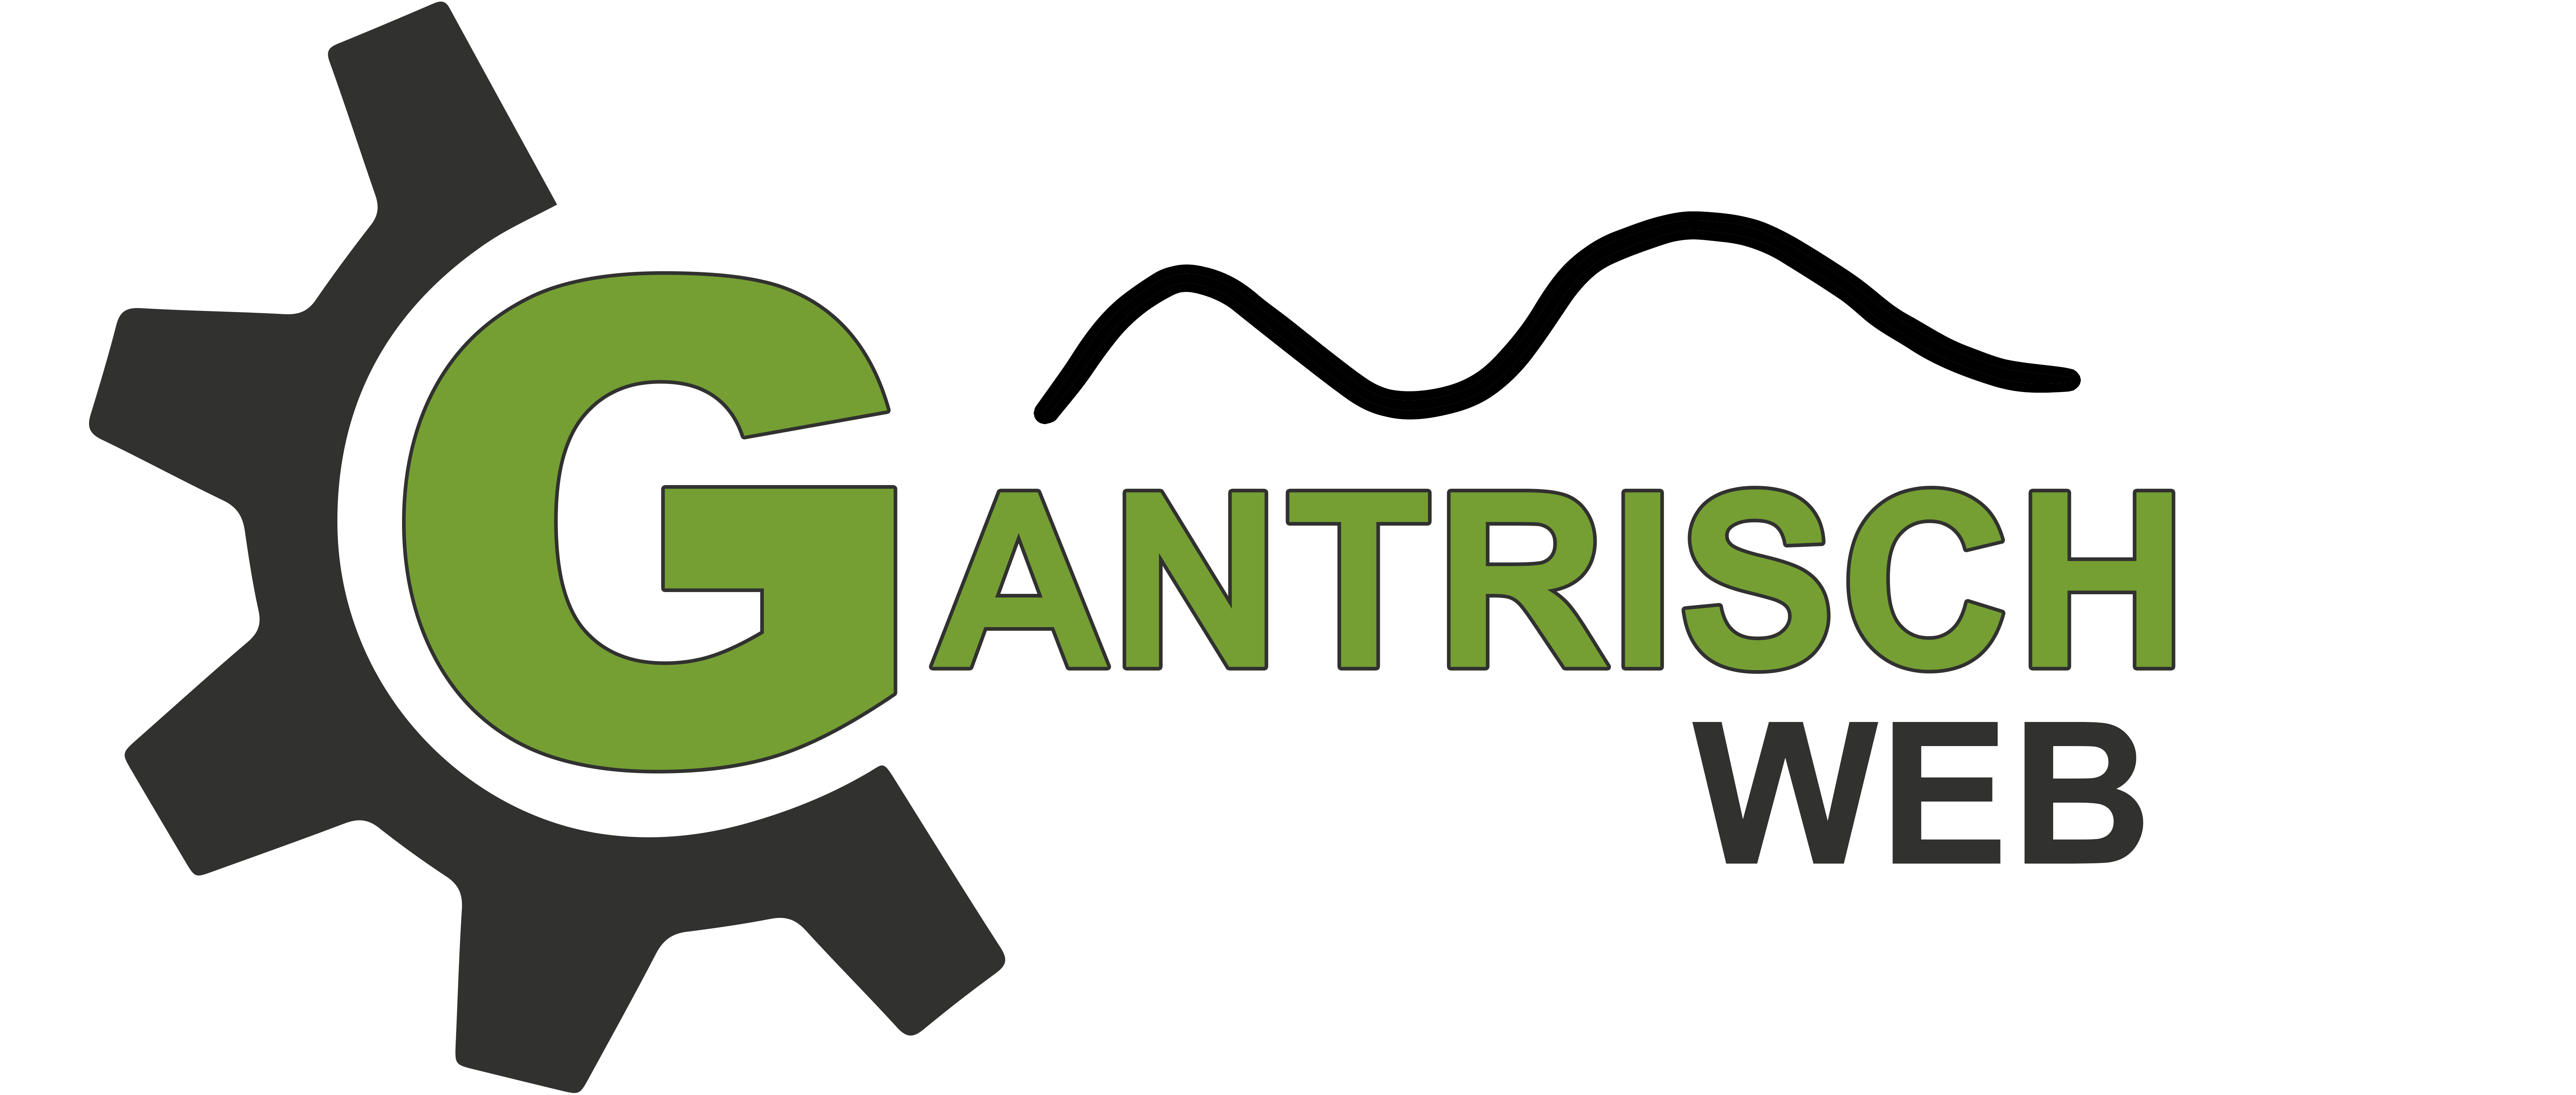 gantrischweb logo8